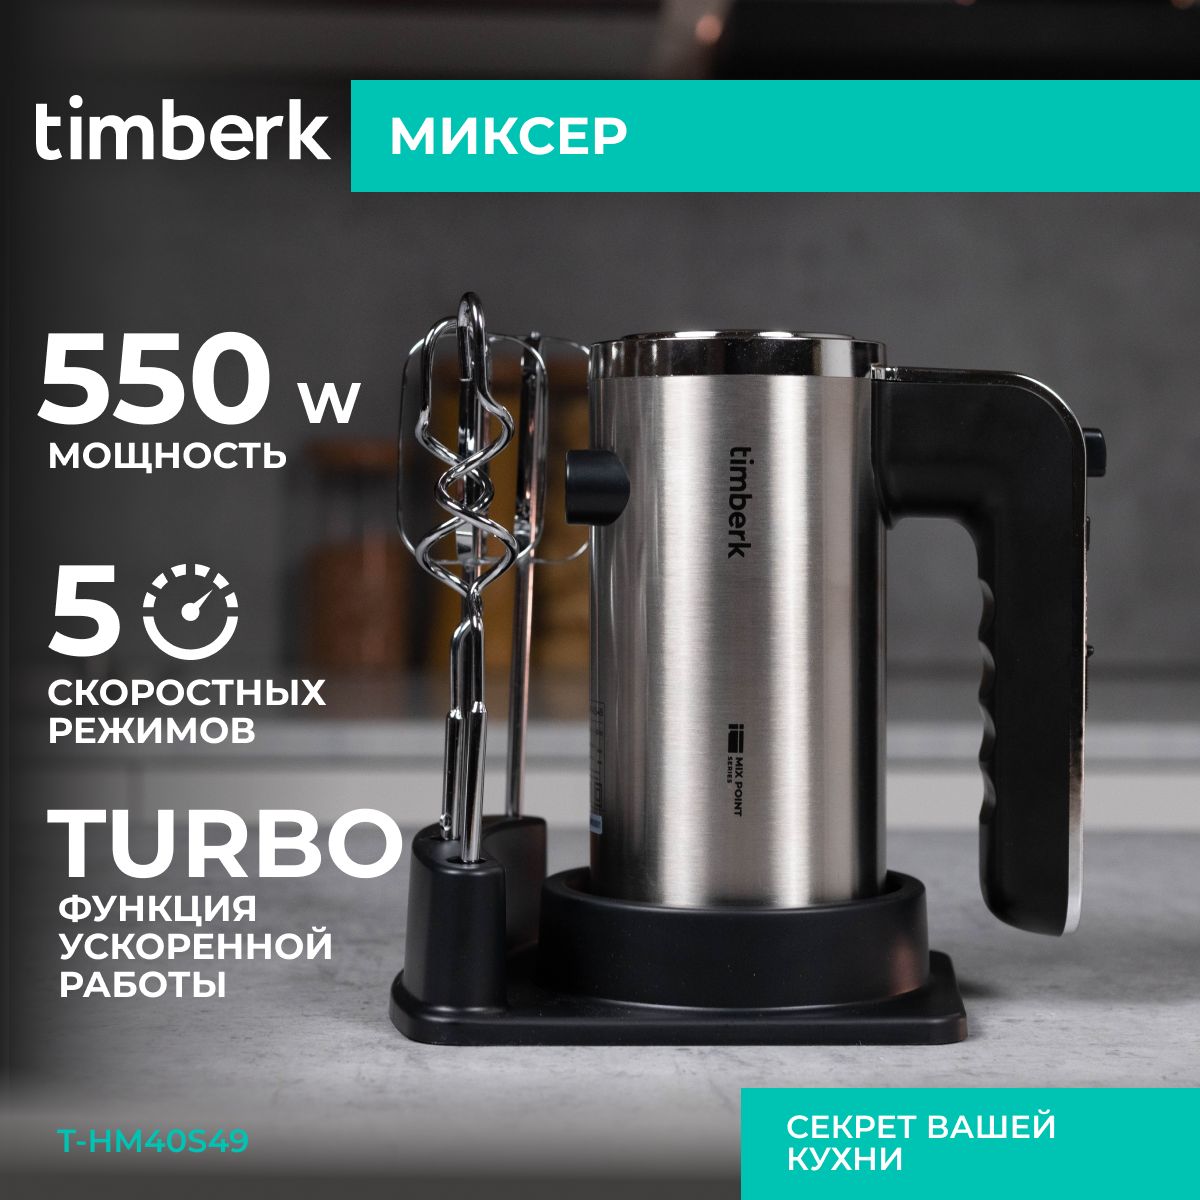 TimberkРучноймиксерT-HM40S49,550Вт